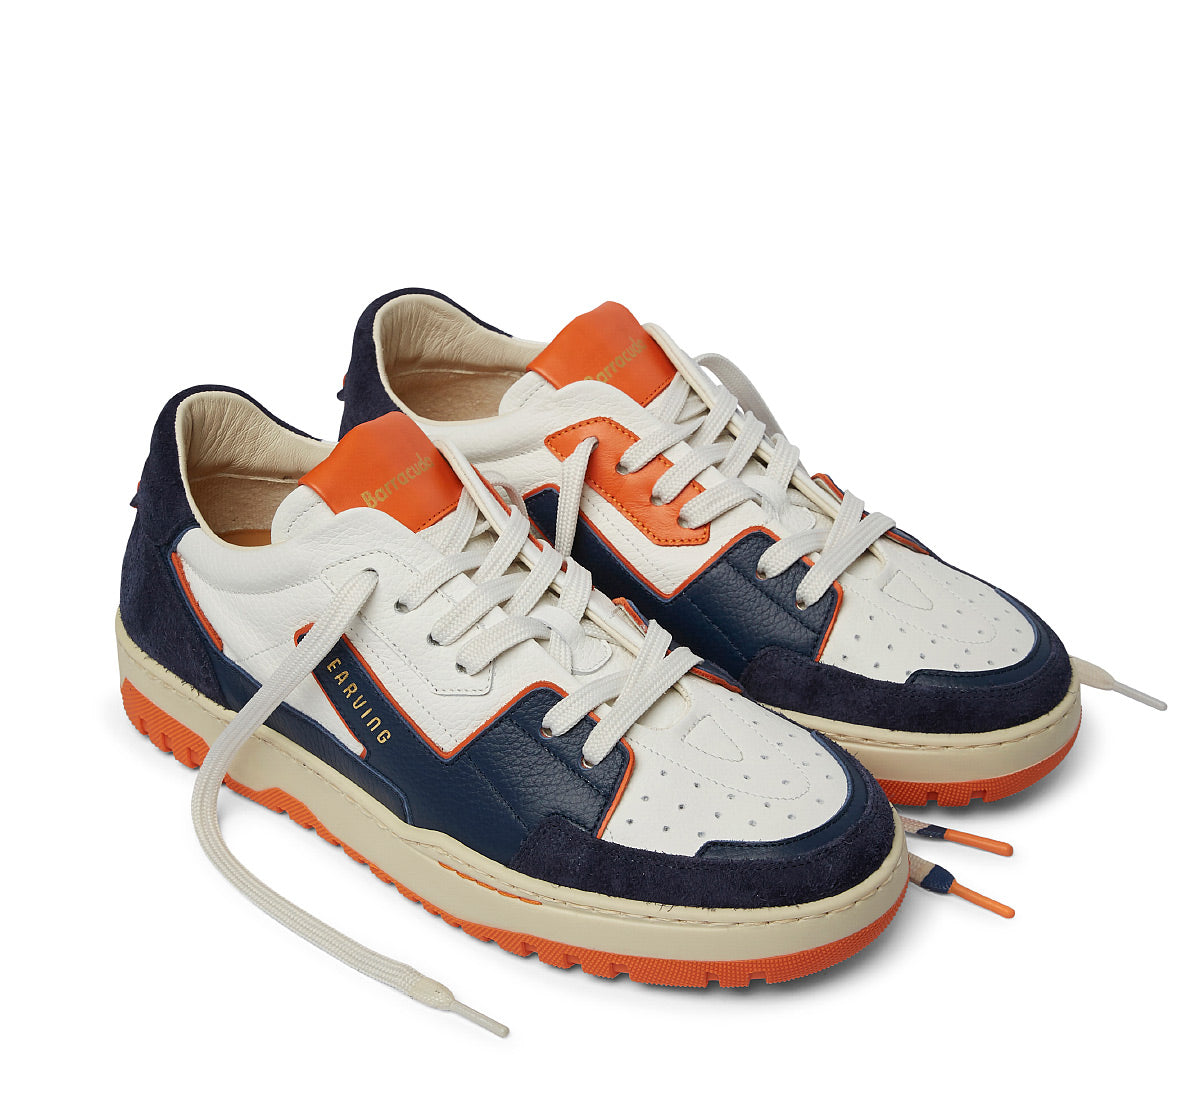 BARRACUDA Men's Earving Sneakers BU3460C00 White/Orange/Blue